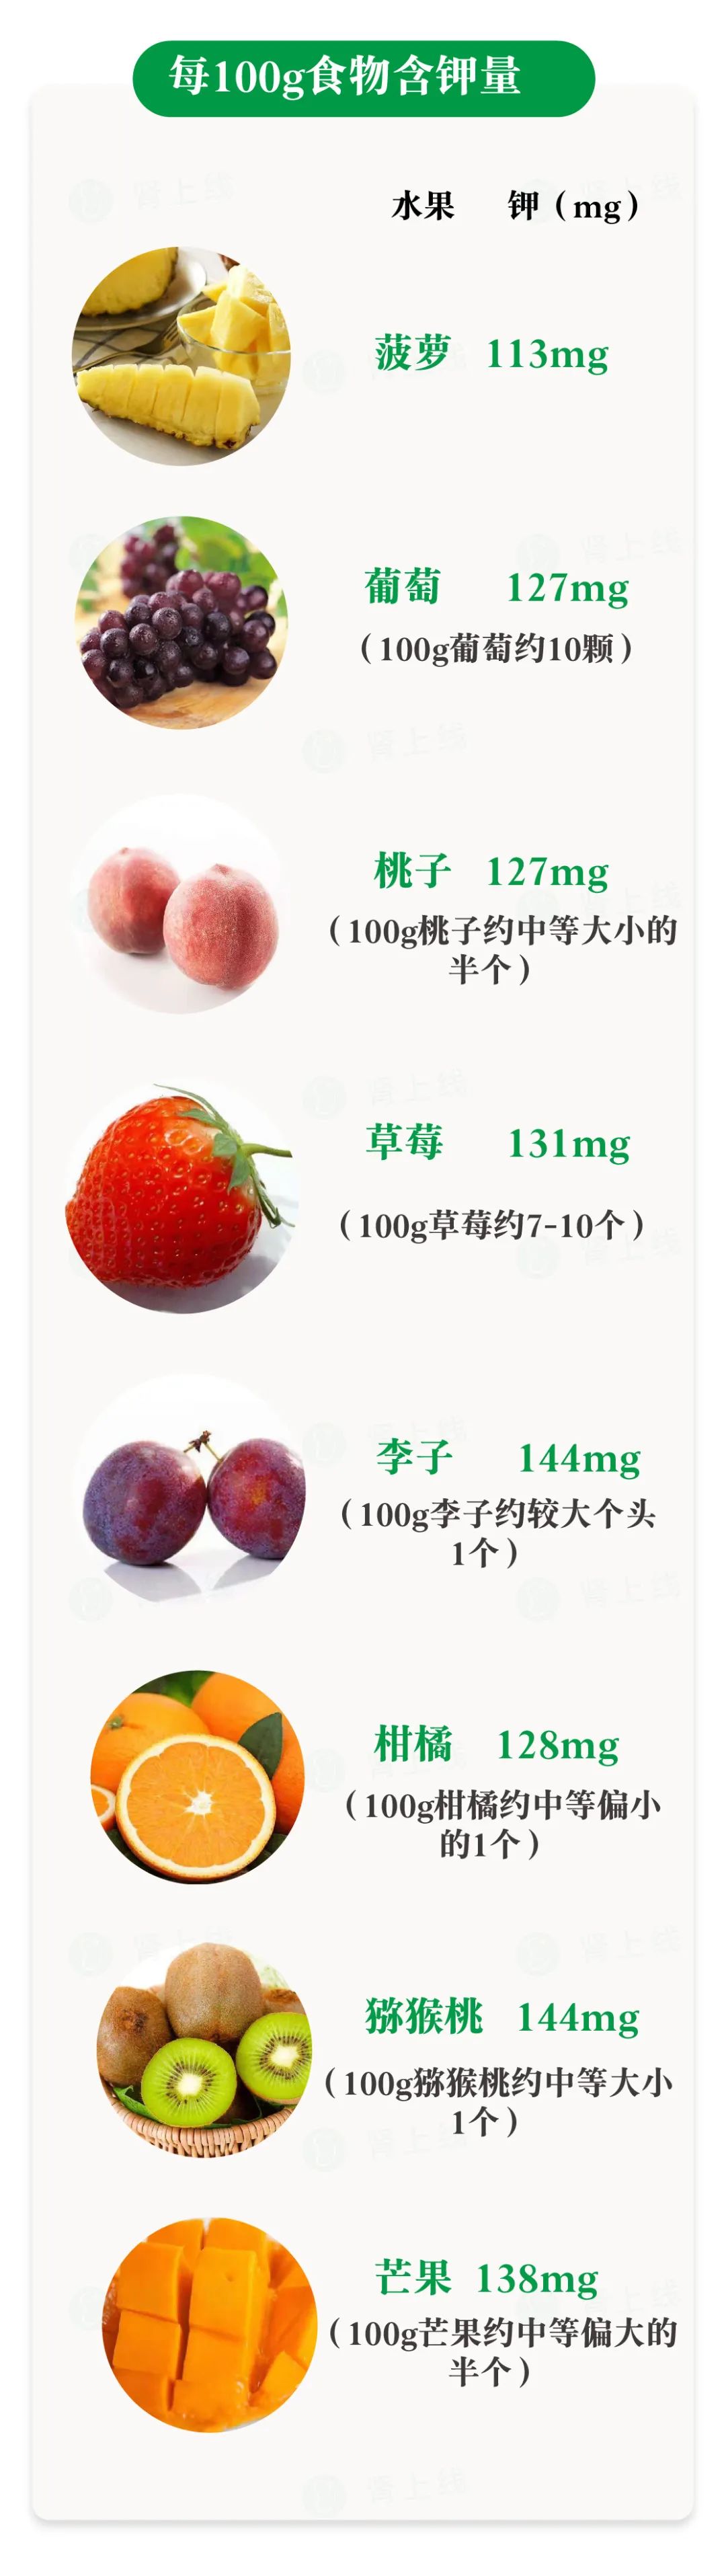 含钾高的水果排行榜图片